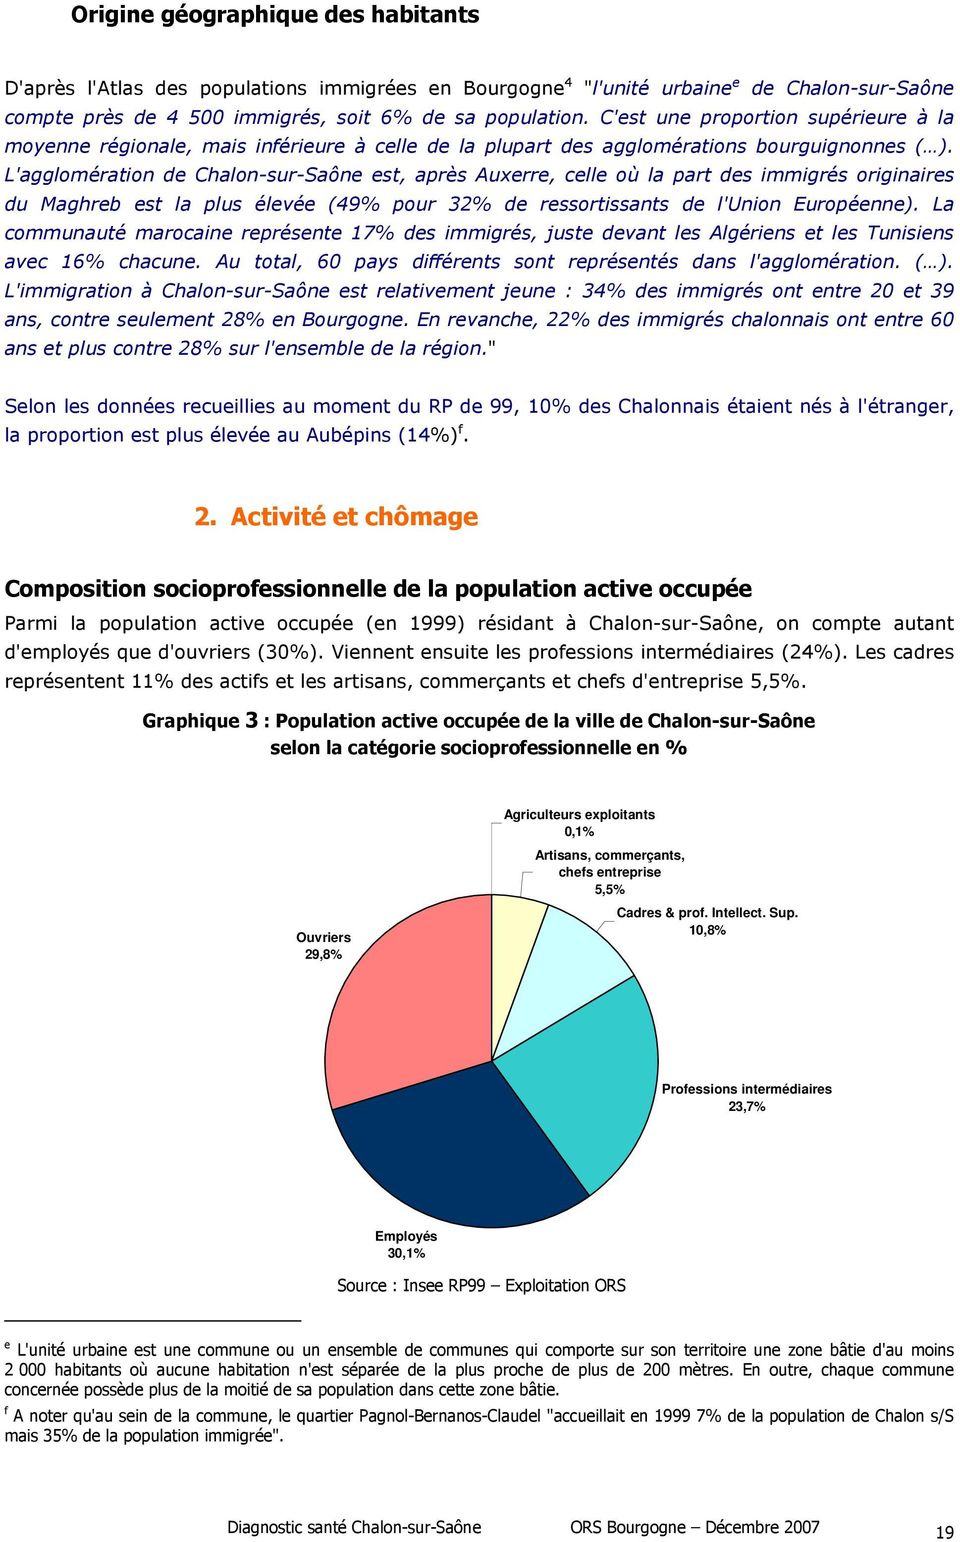 L'agglomération de Chalon-sur-Saône est, après Auxerre, celle où la part des immigrés originaires du Maghreb est la plus élevée (49% pour 32% de ressortissants de l'union Européenne).